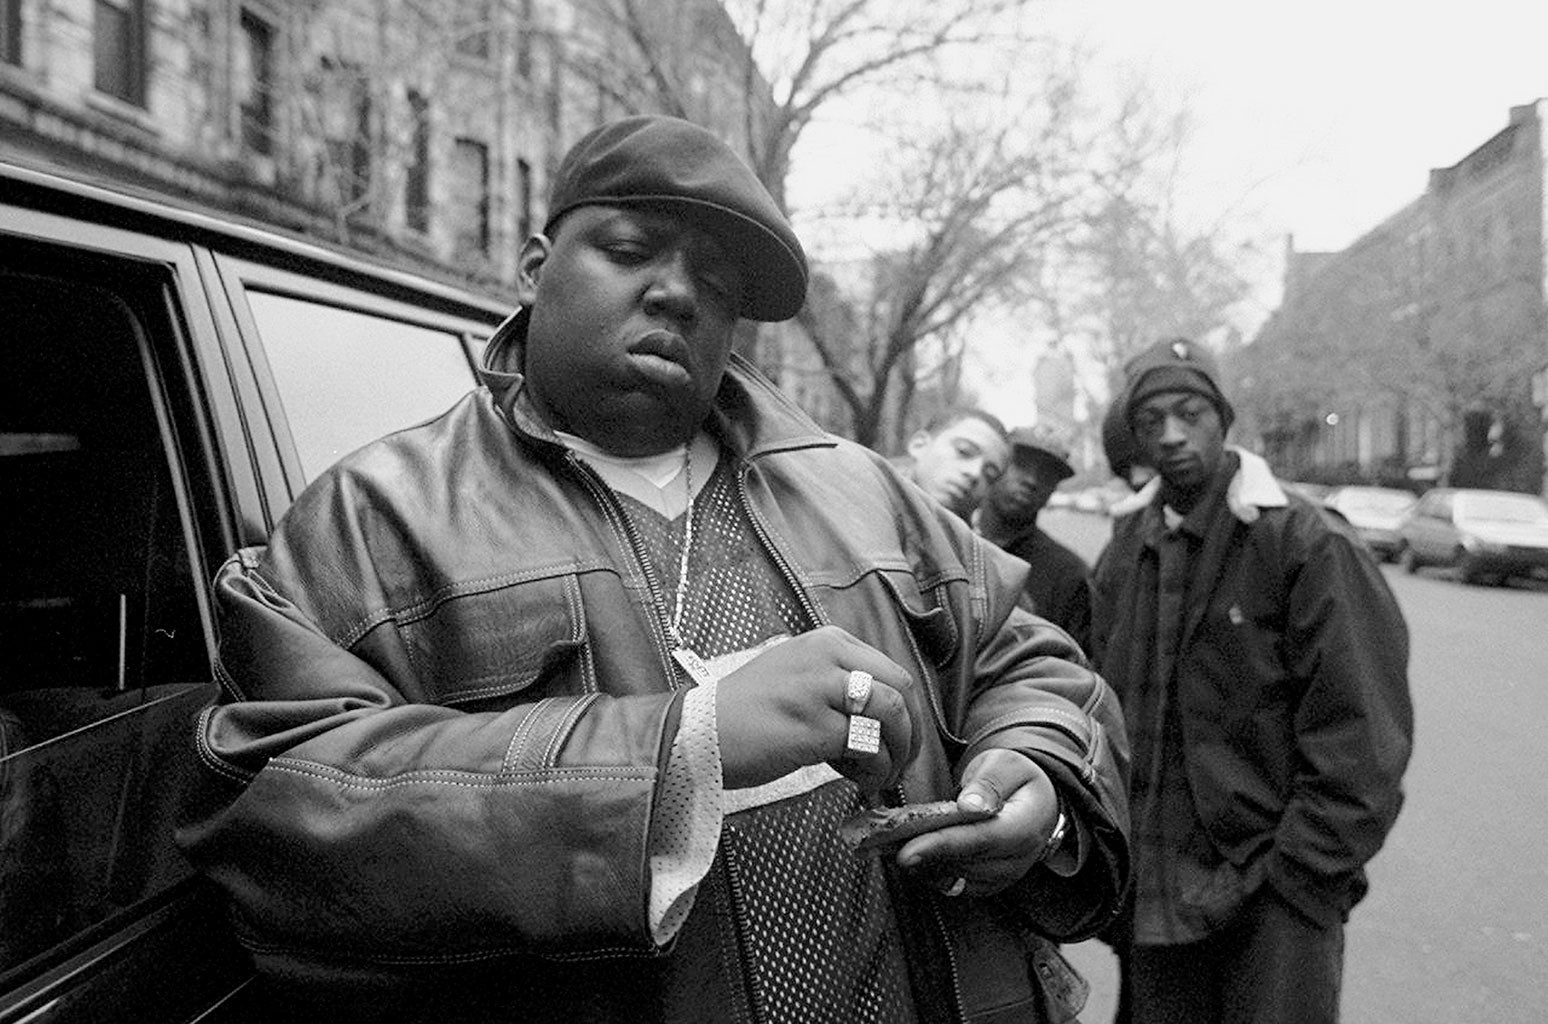 Morto há 19 anos, Notorious B.I.G. voltará a cantar como 'artista  holográfico' - Olhar Digital